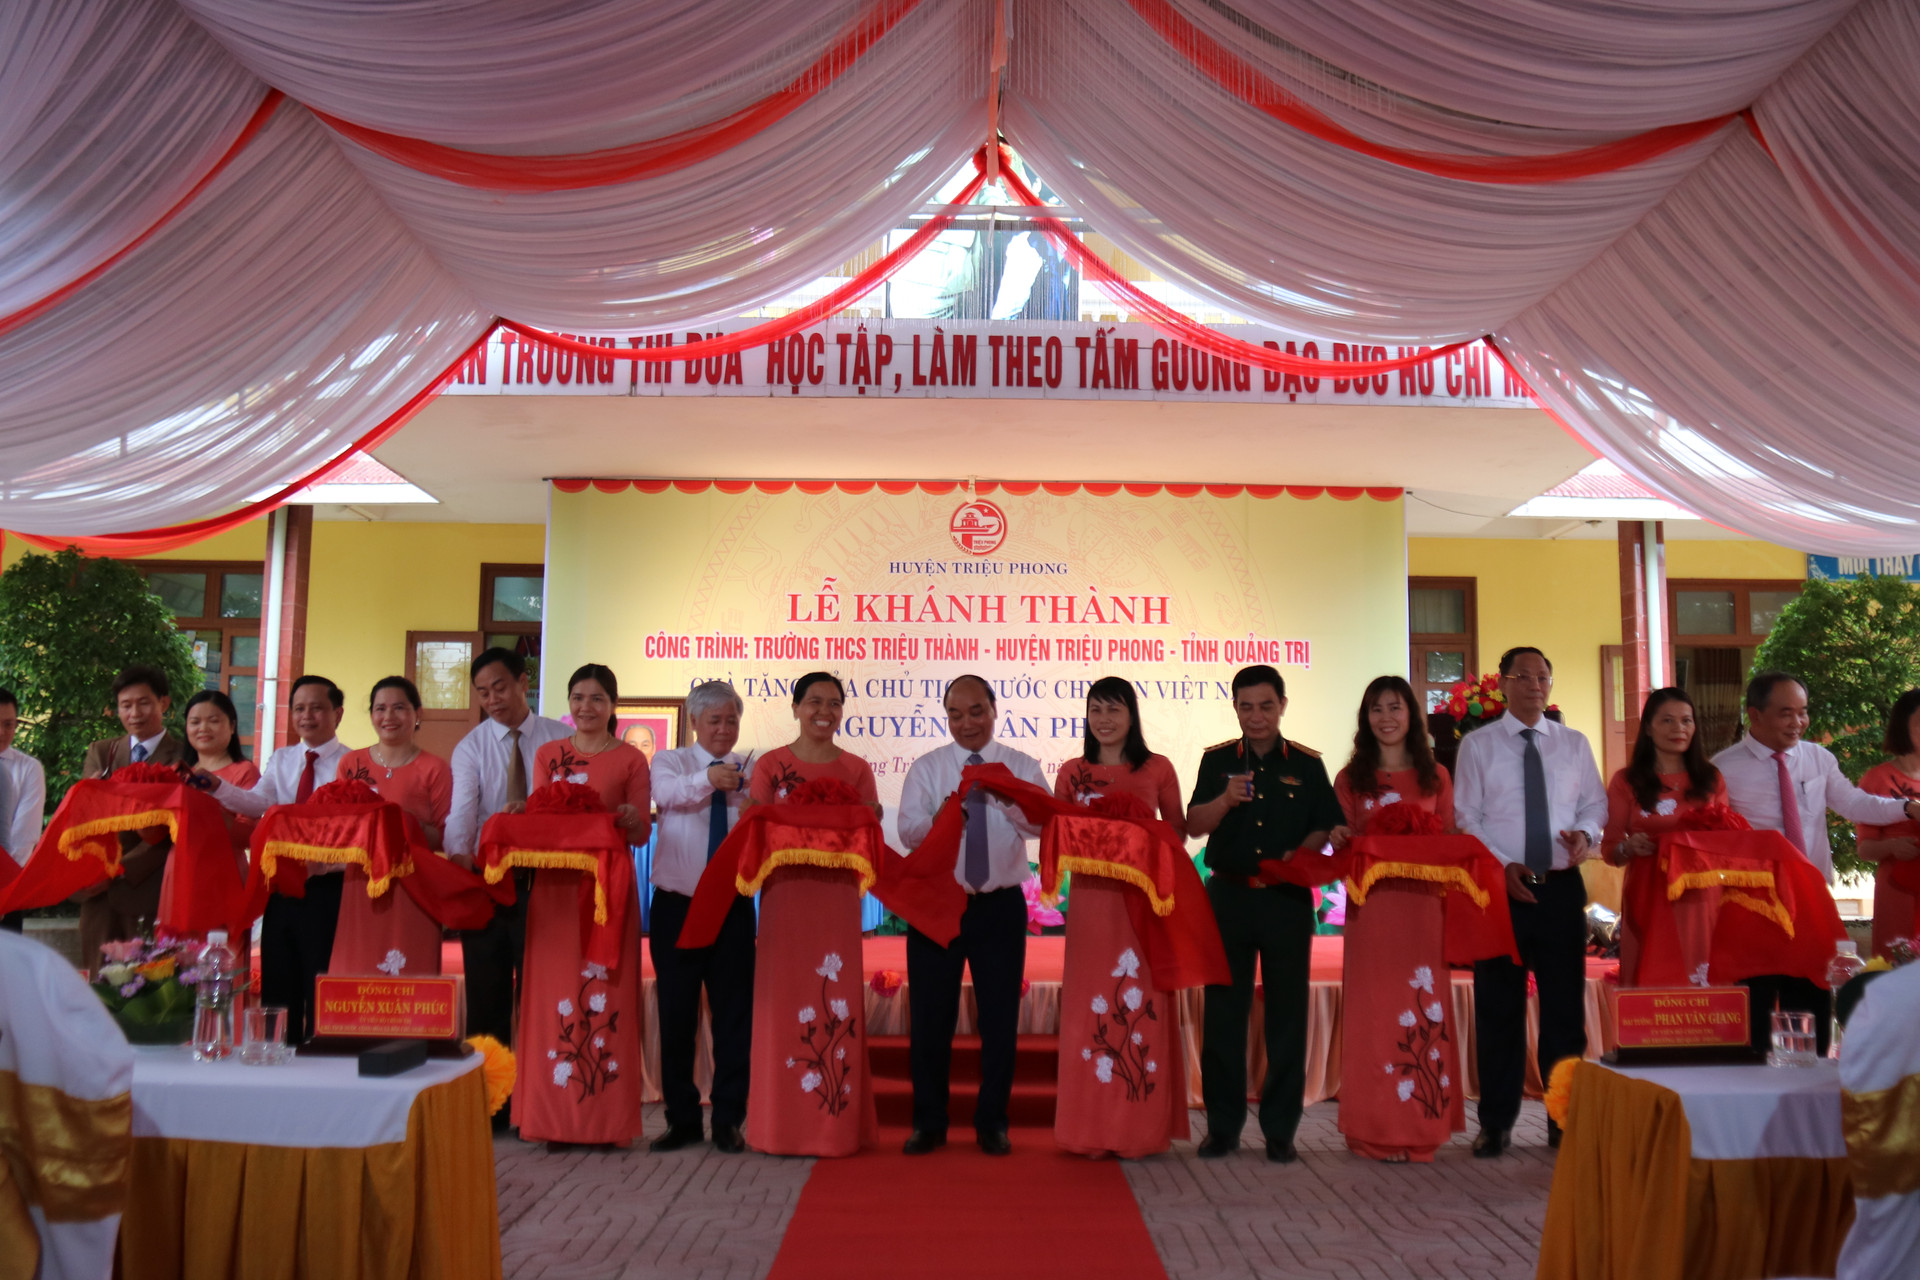 Trường THCS Triệu Thành vinh hạnh được Chủ tịch nước Nguyễn Xuân Phúc và nhiều lãnh đạo Đảng, Nhà nước; lãnh đạo Bộ, ban, ngành Trung ương và địa phương cắt băng khánh thành.